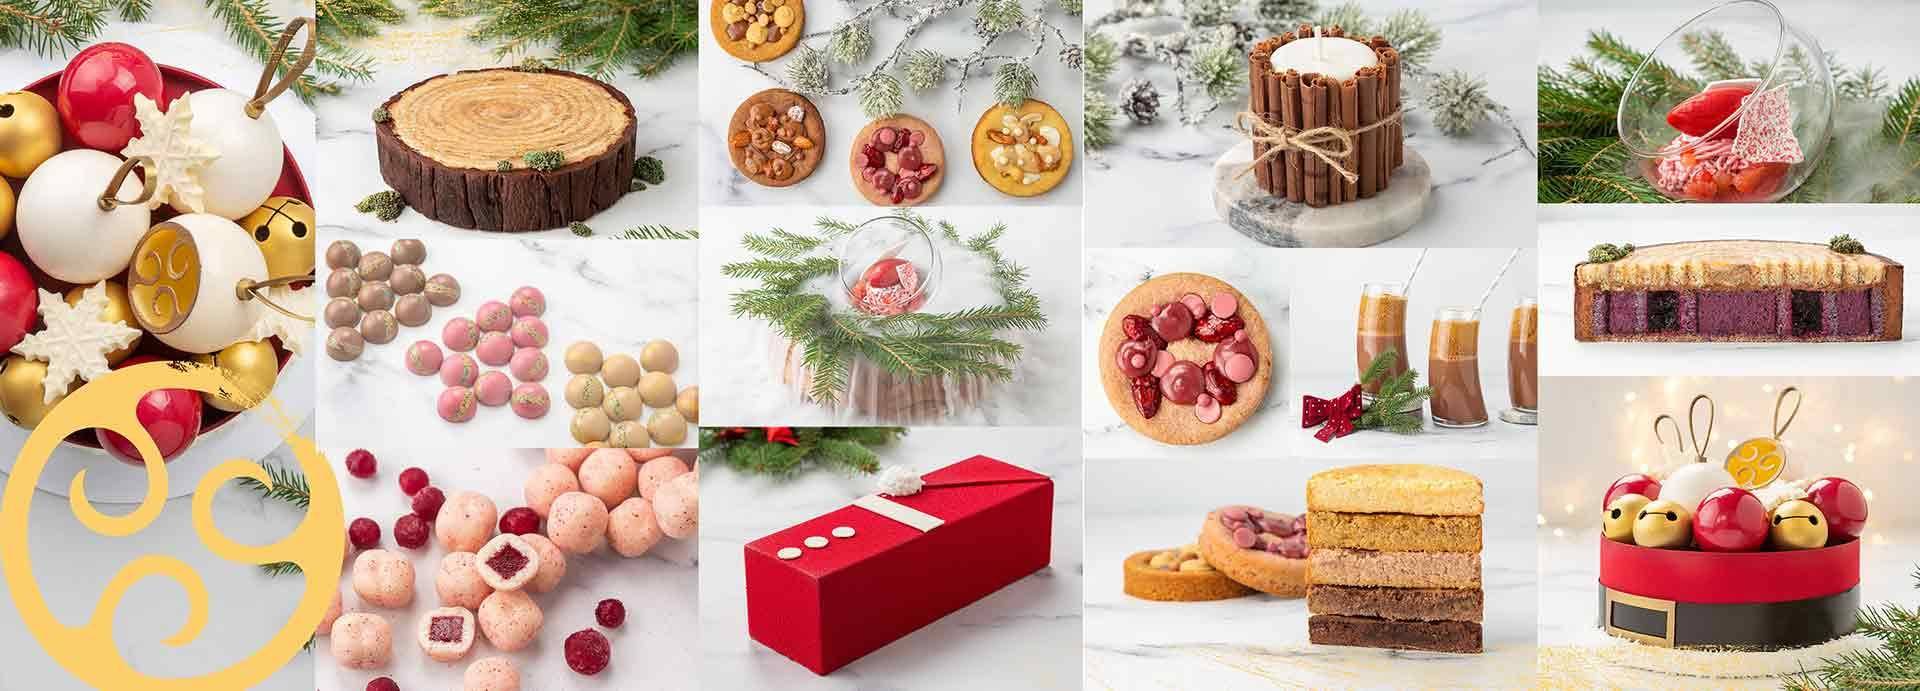 Десерты для Нового Года и Рождества